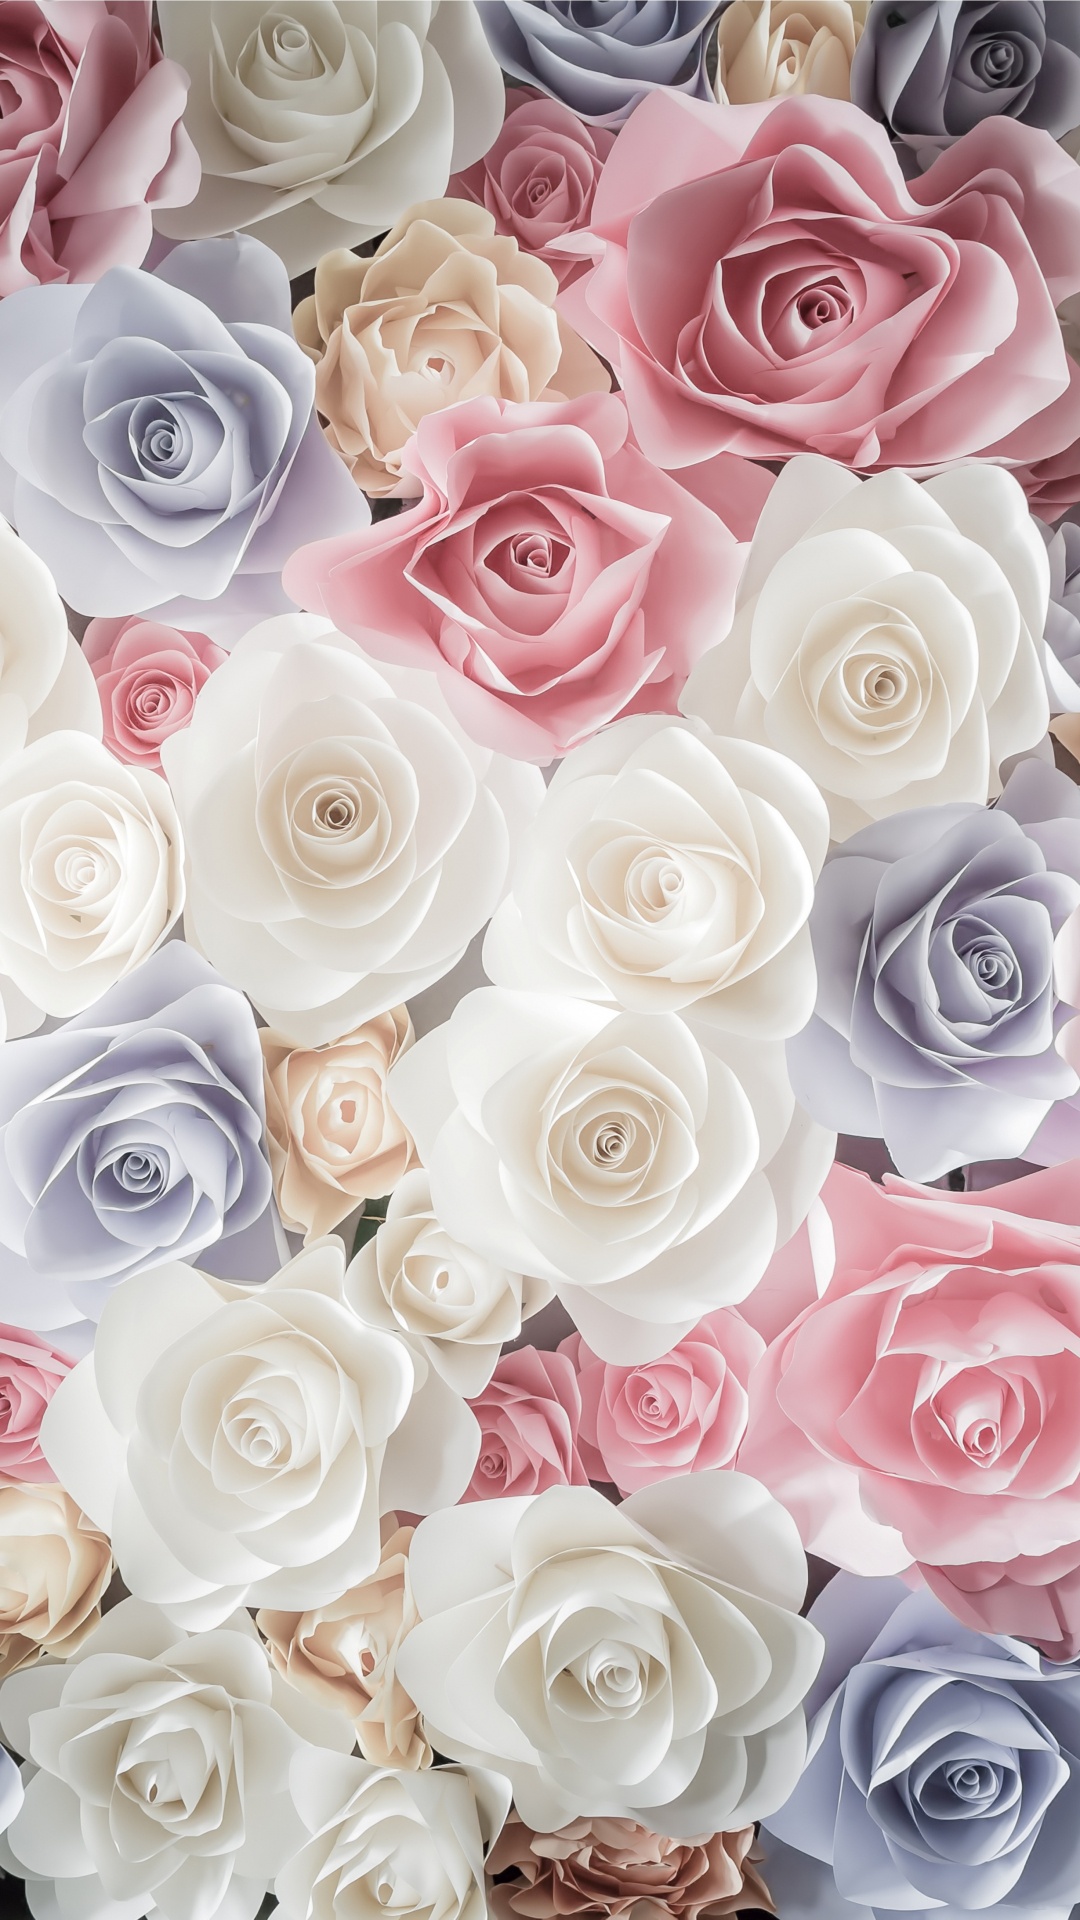 玫瑰花园, 切花, 粉红色, 玫瑰家庭, 花卉设计 壁纸 1080x1920 允许